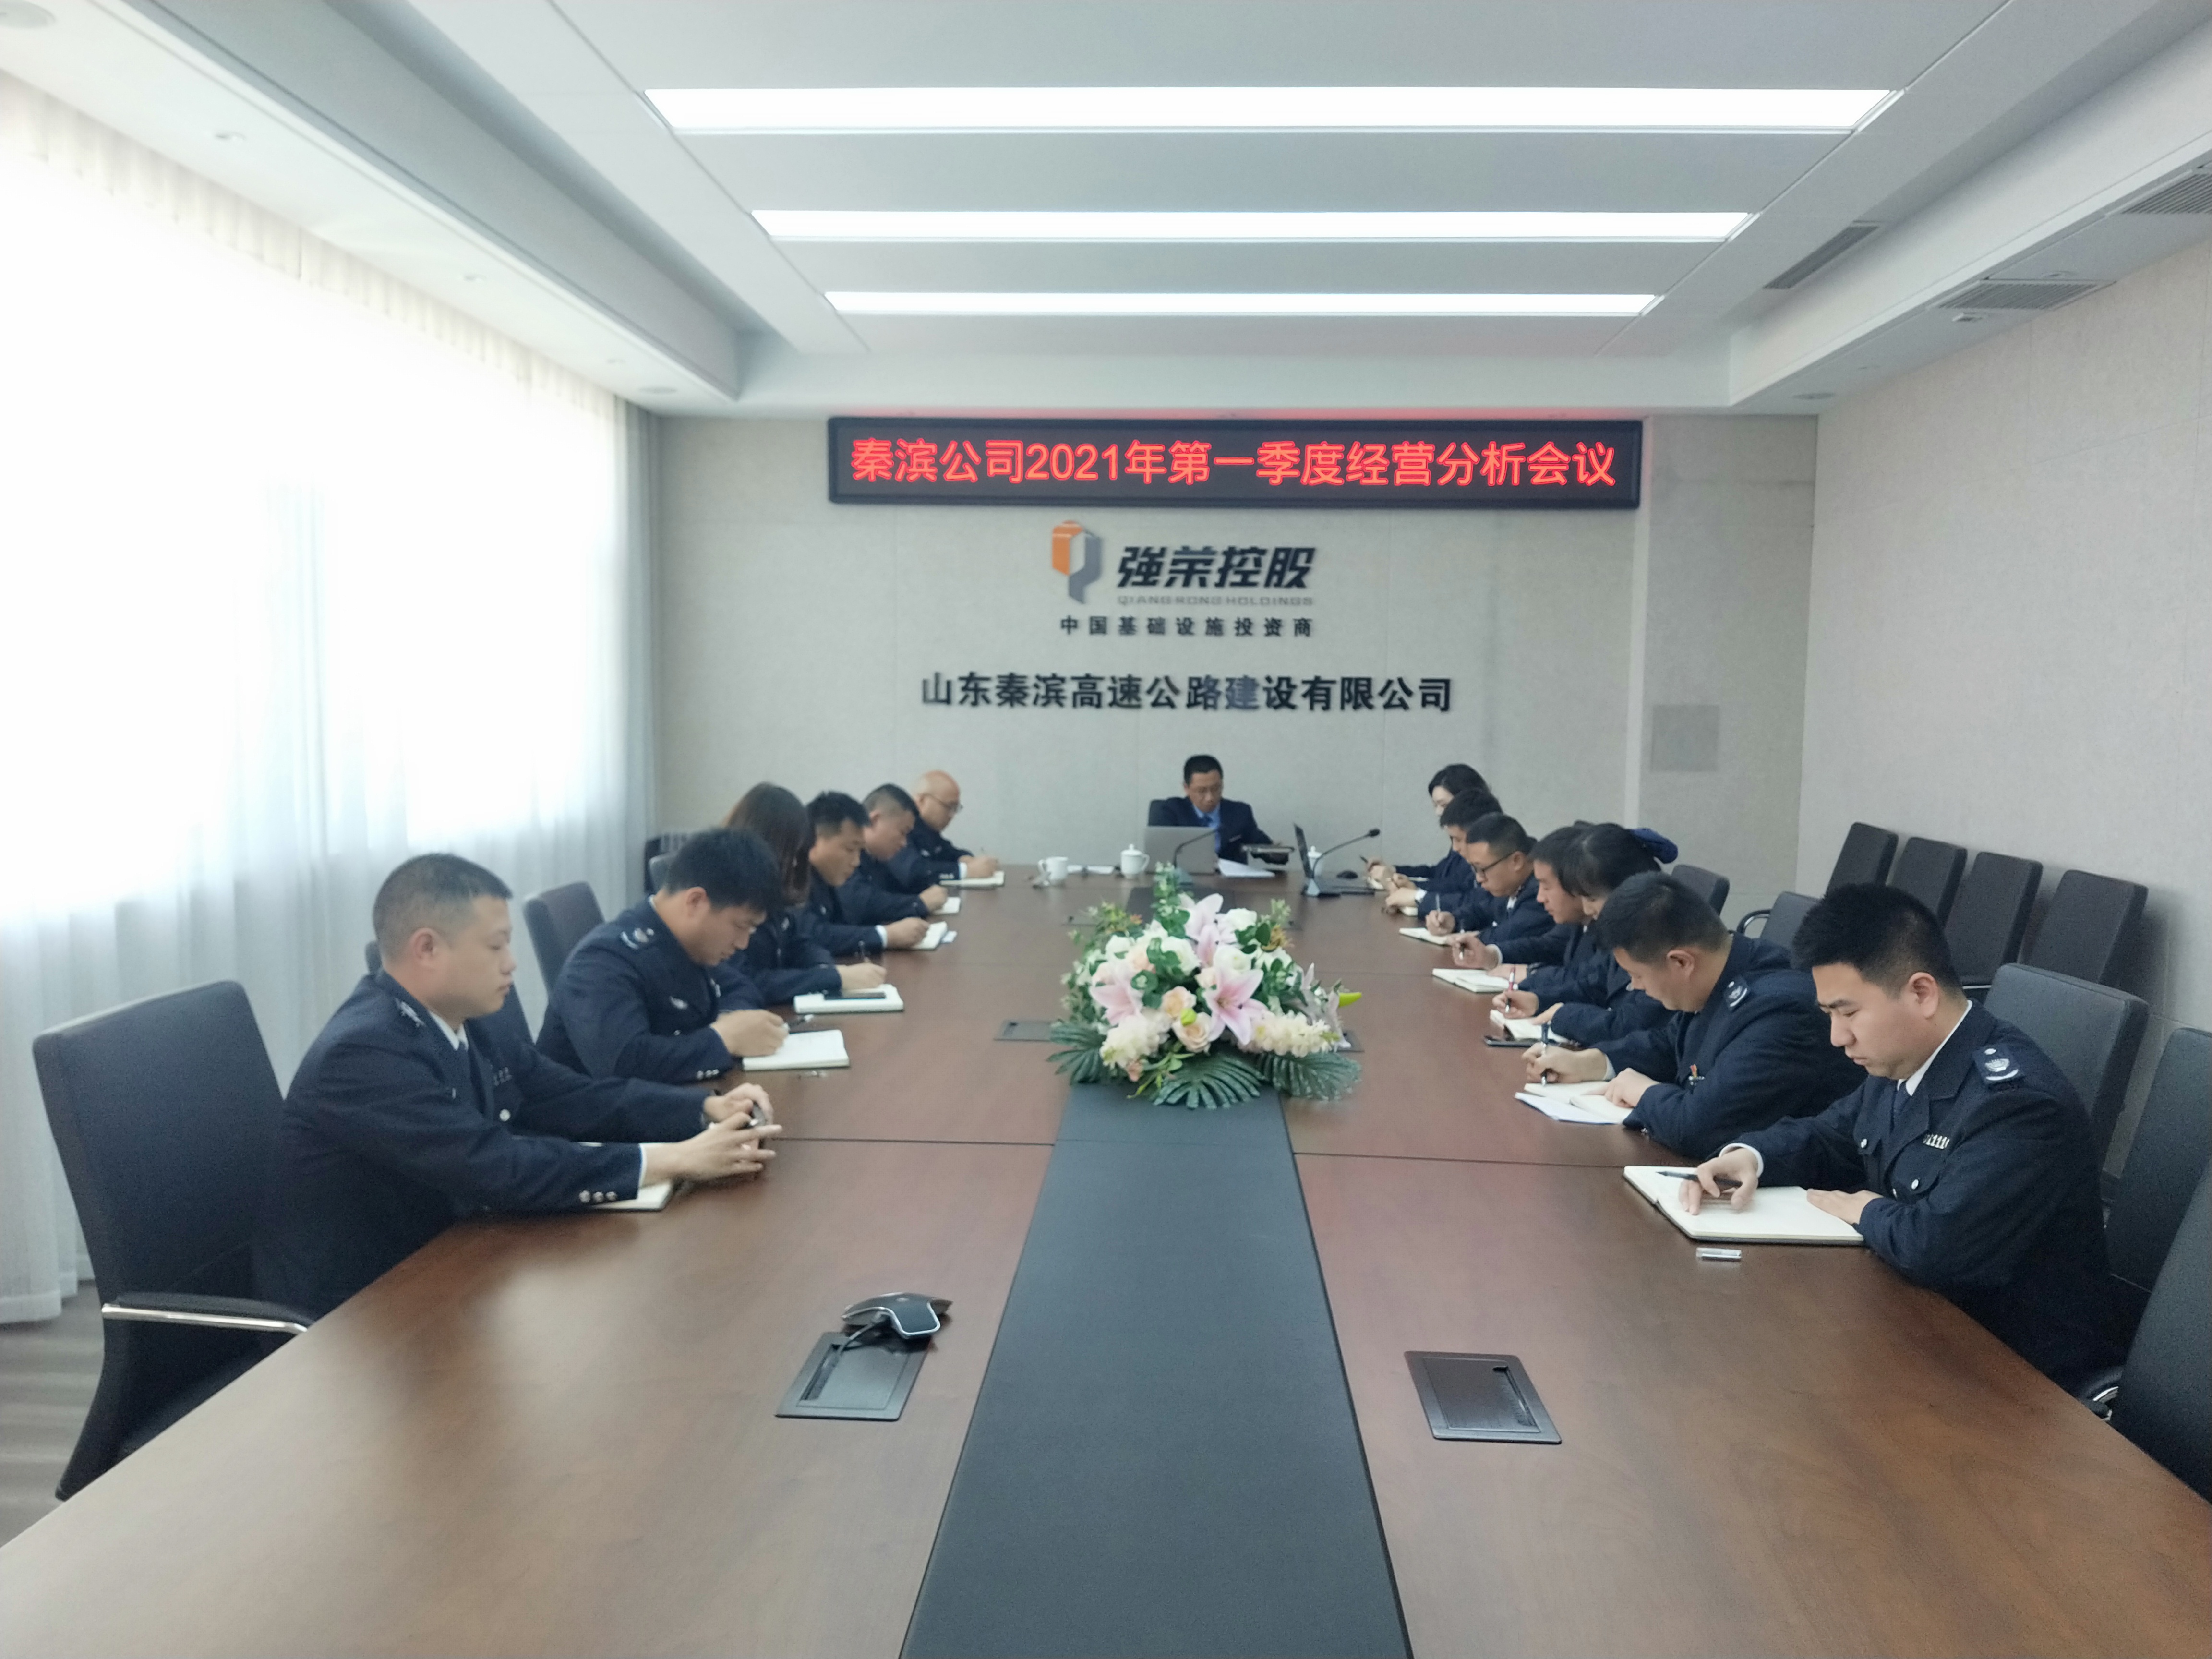 秦滨公司召开2021年第一季度运营管理分析会